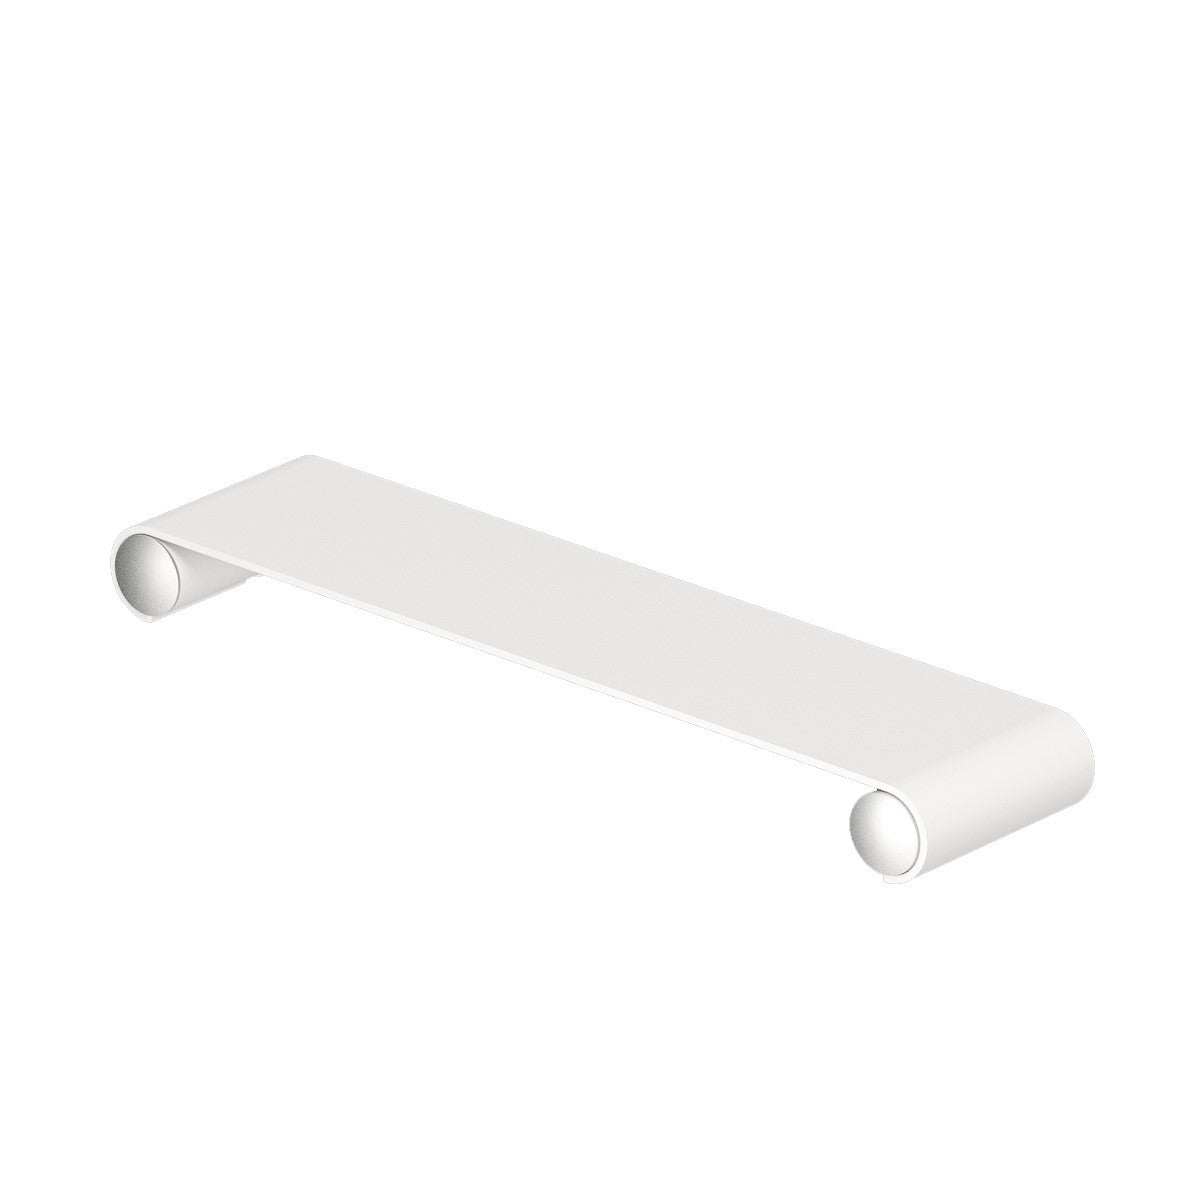 Black / White Matte Shower Shelf 30 Simple & Elegant, Stainless Steel,  Bathroom Organisation 